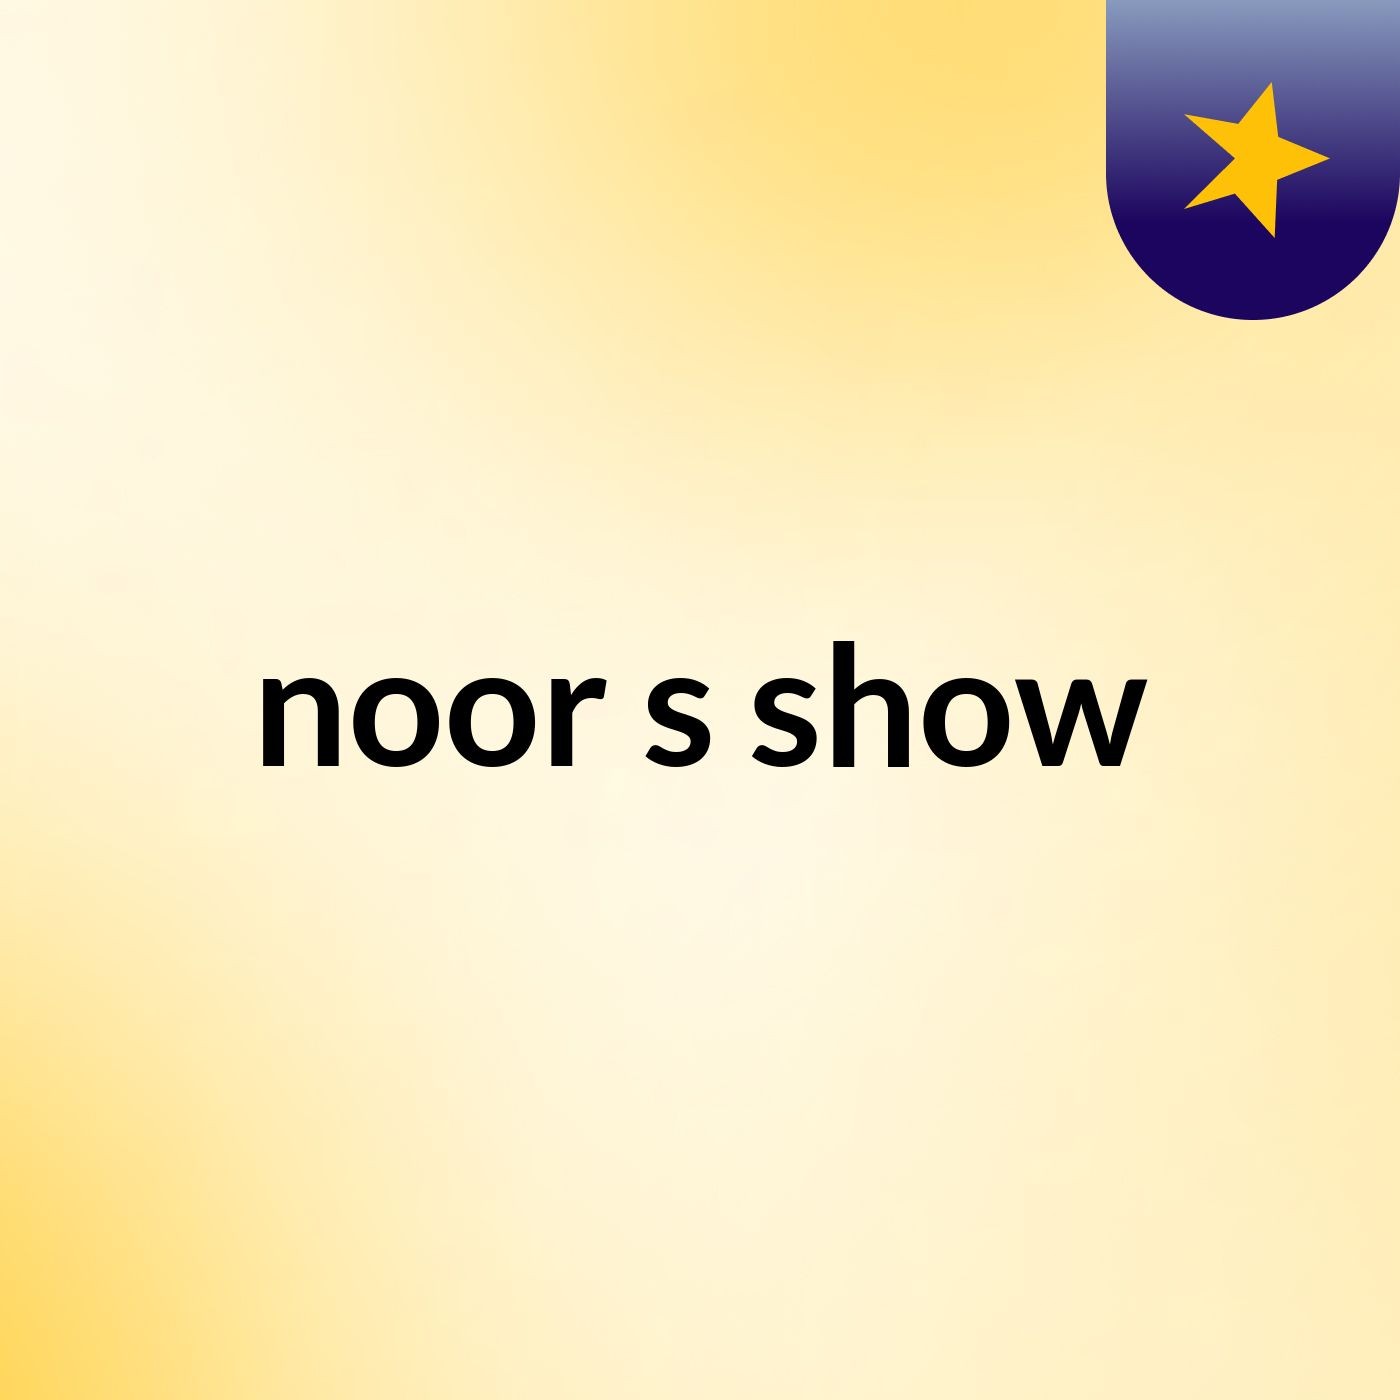 noor's show